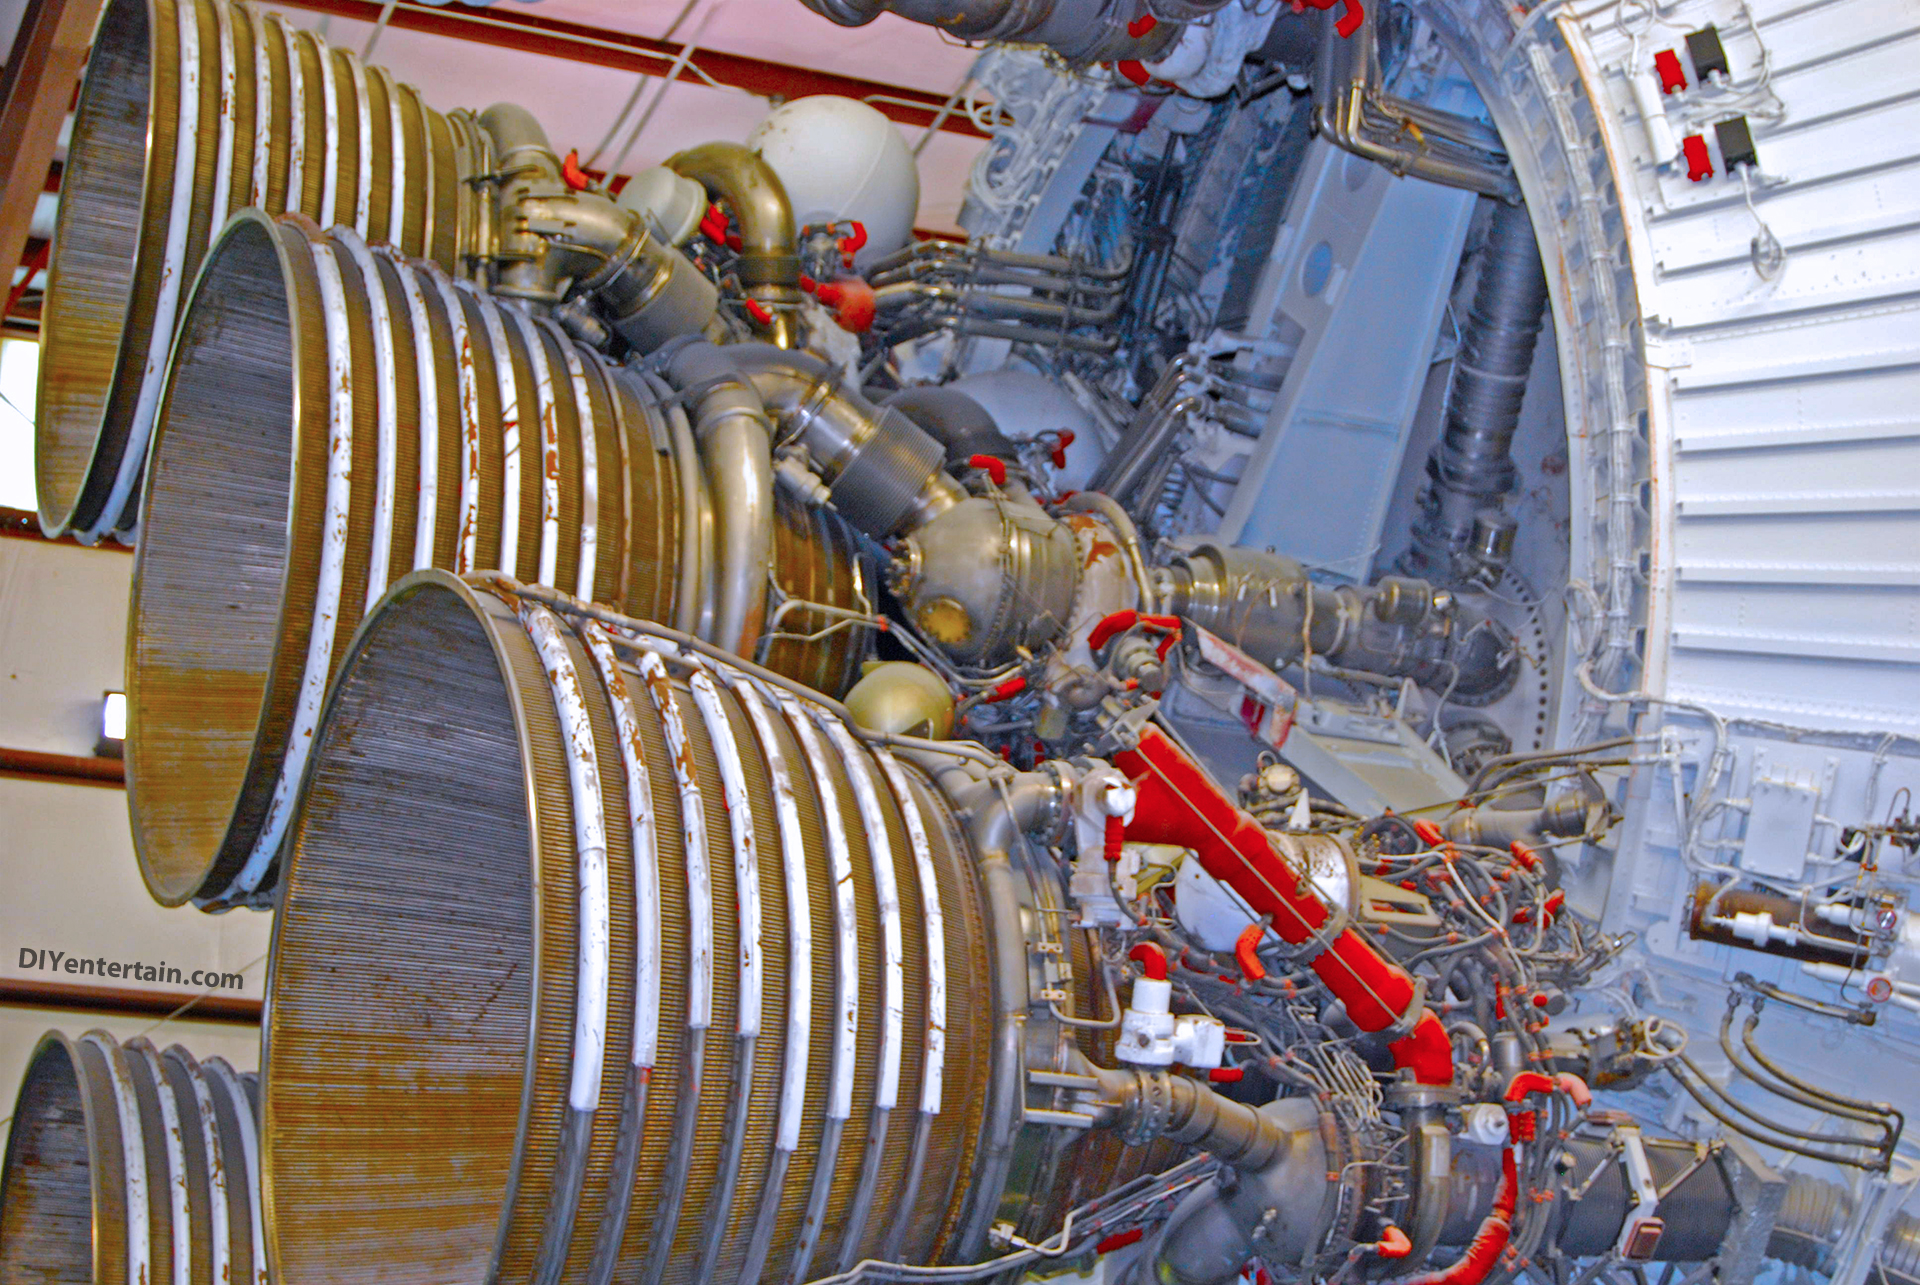 Rocketship at NASA